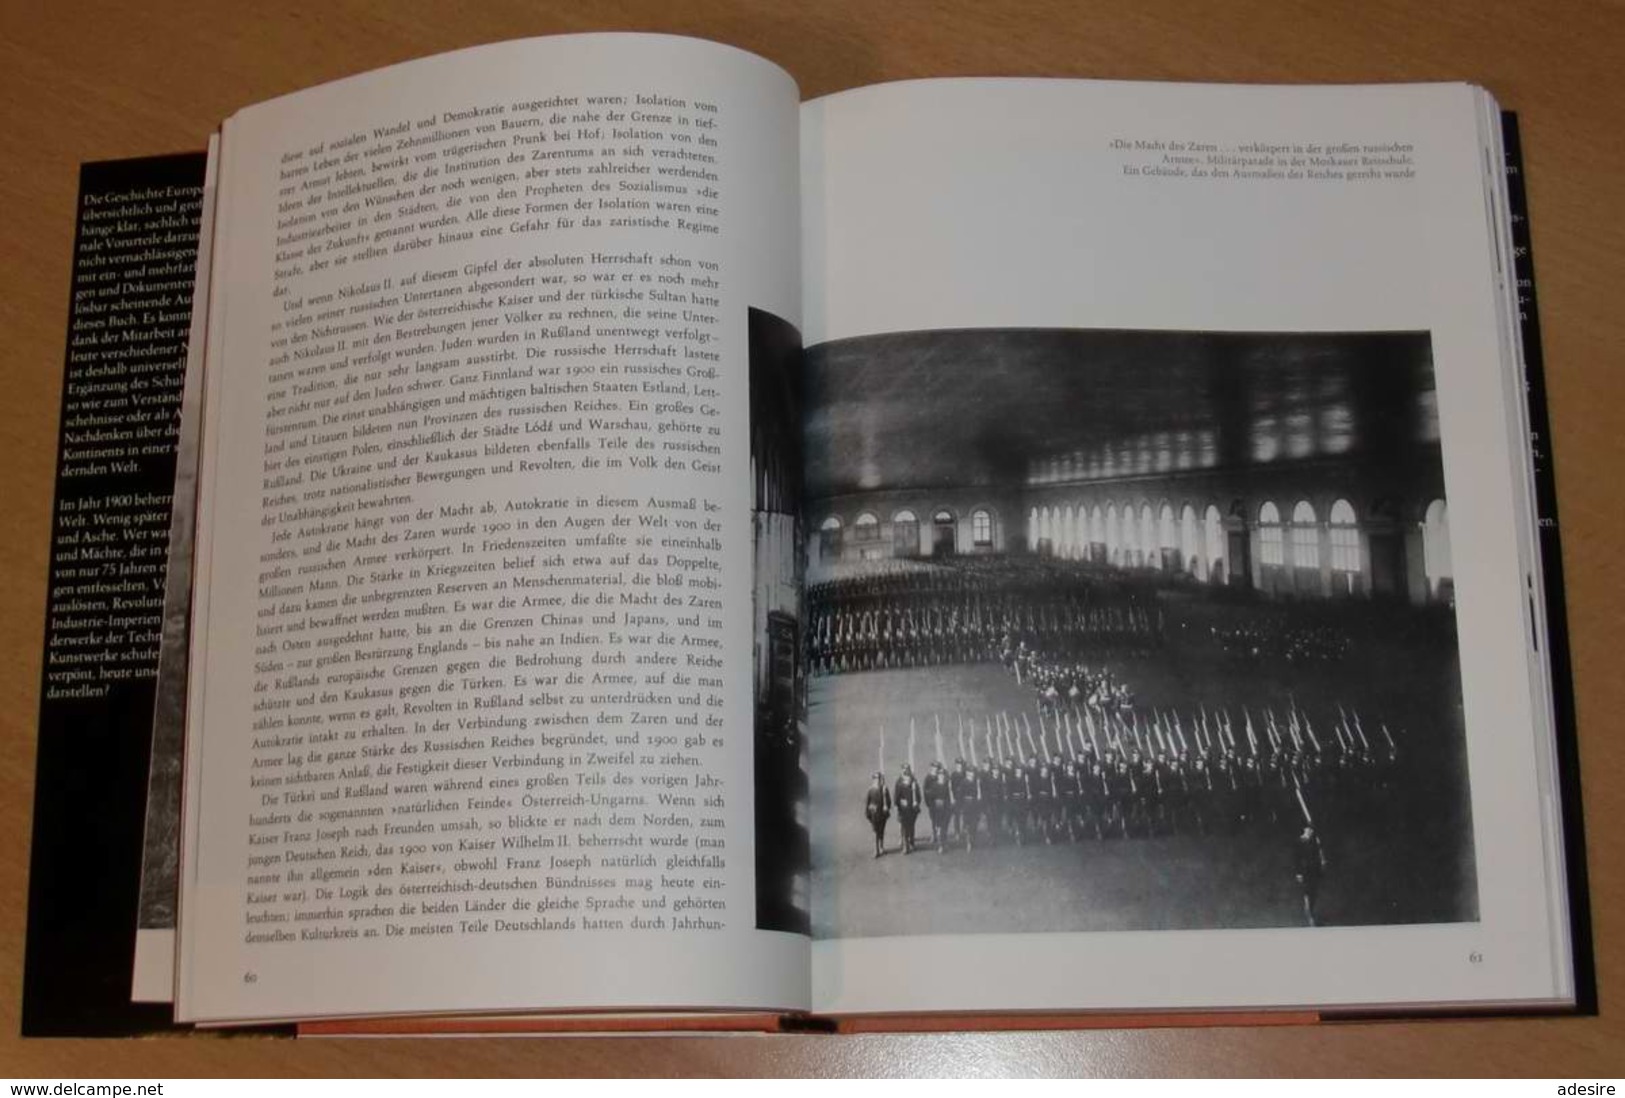 EUROPA IM 20.JAHR-HUNDERT in Text und Bild, John Terraine, gebrauchtes Buch, 350 Seiten, viele Bilder, Ausgabe ...